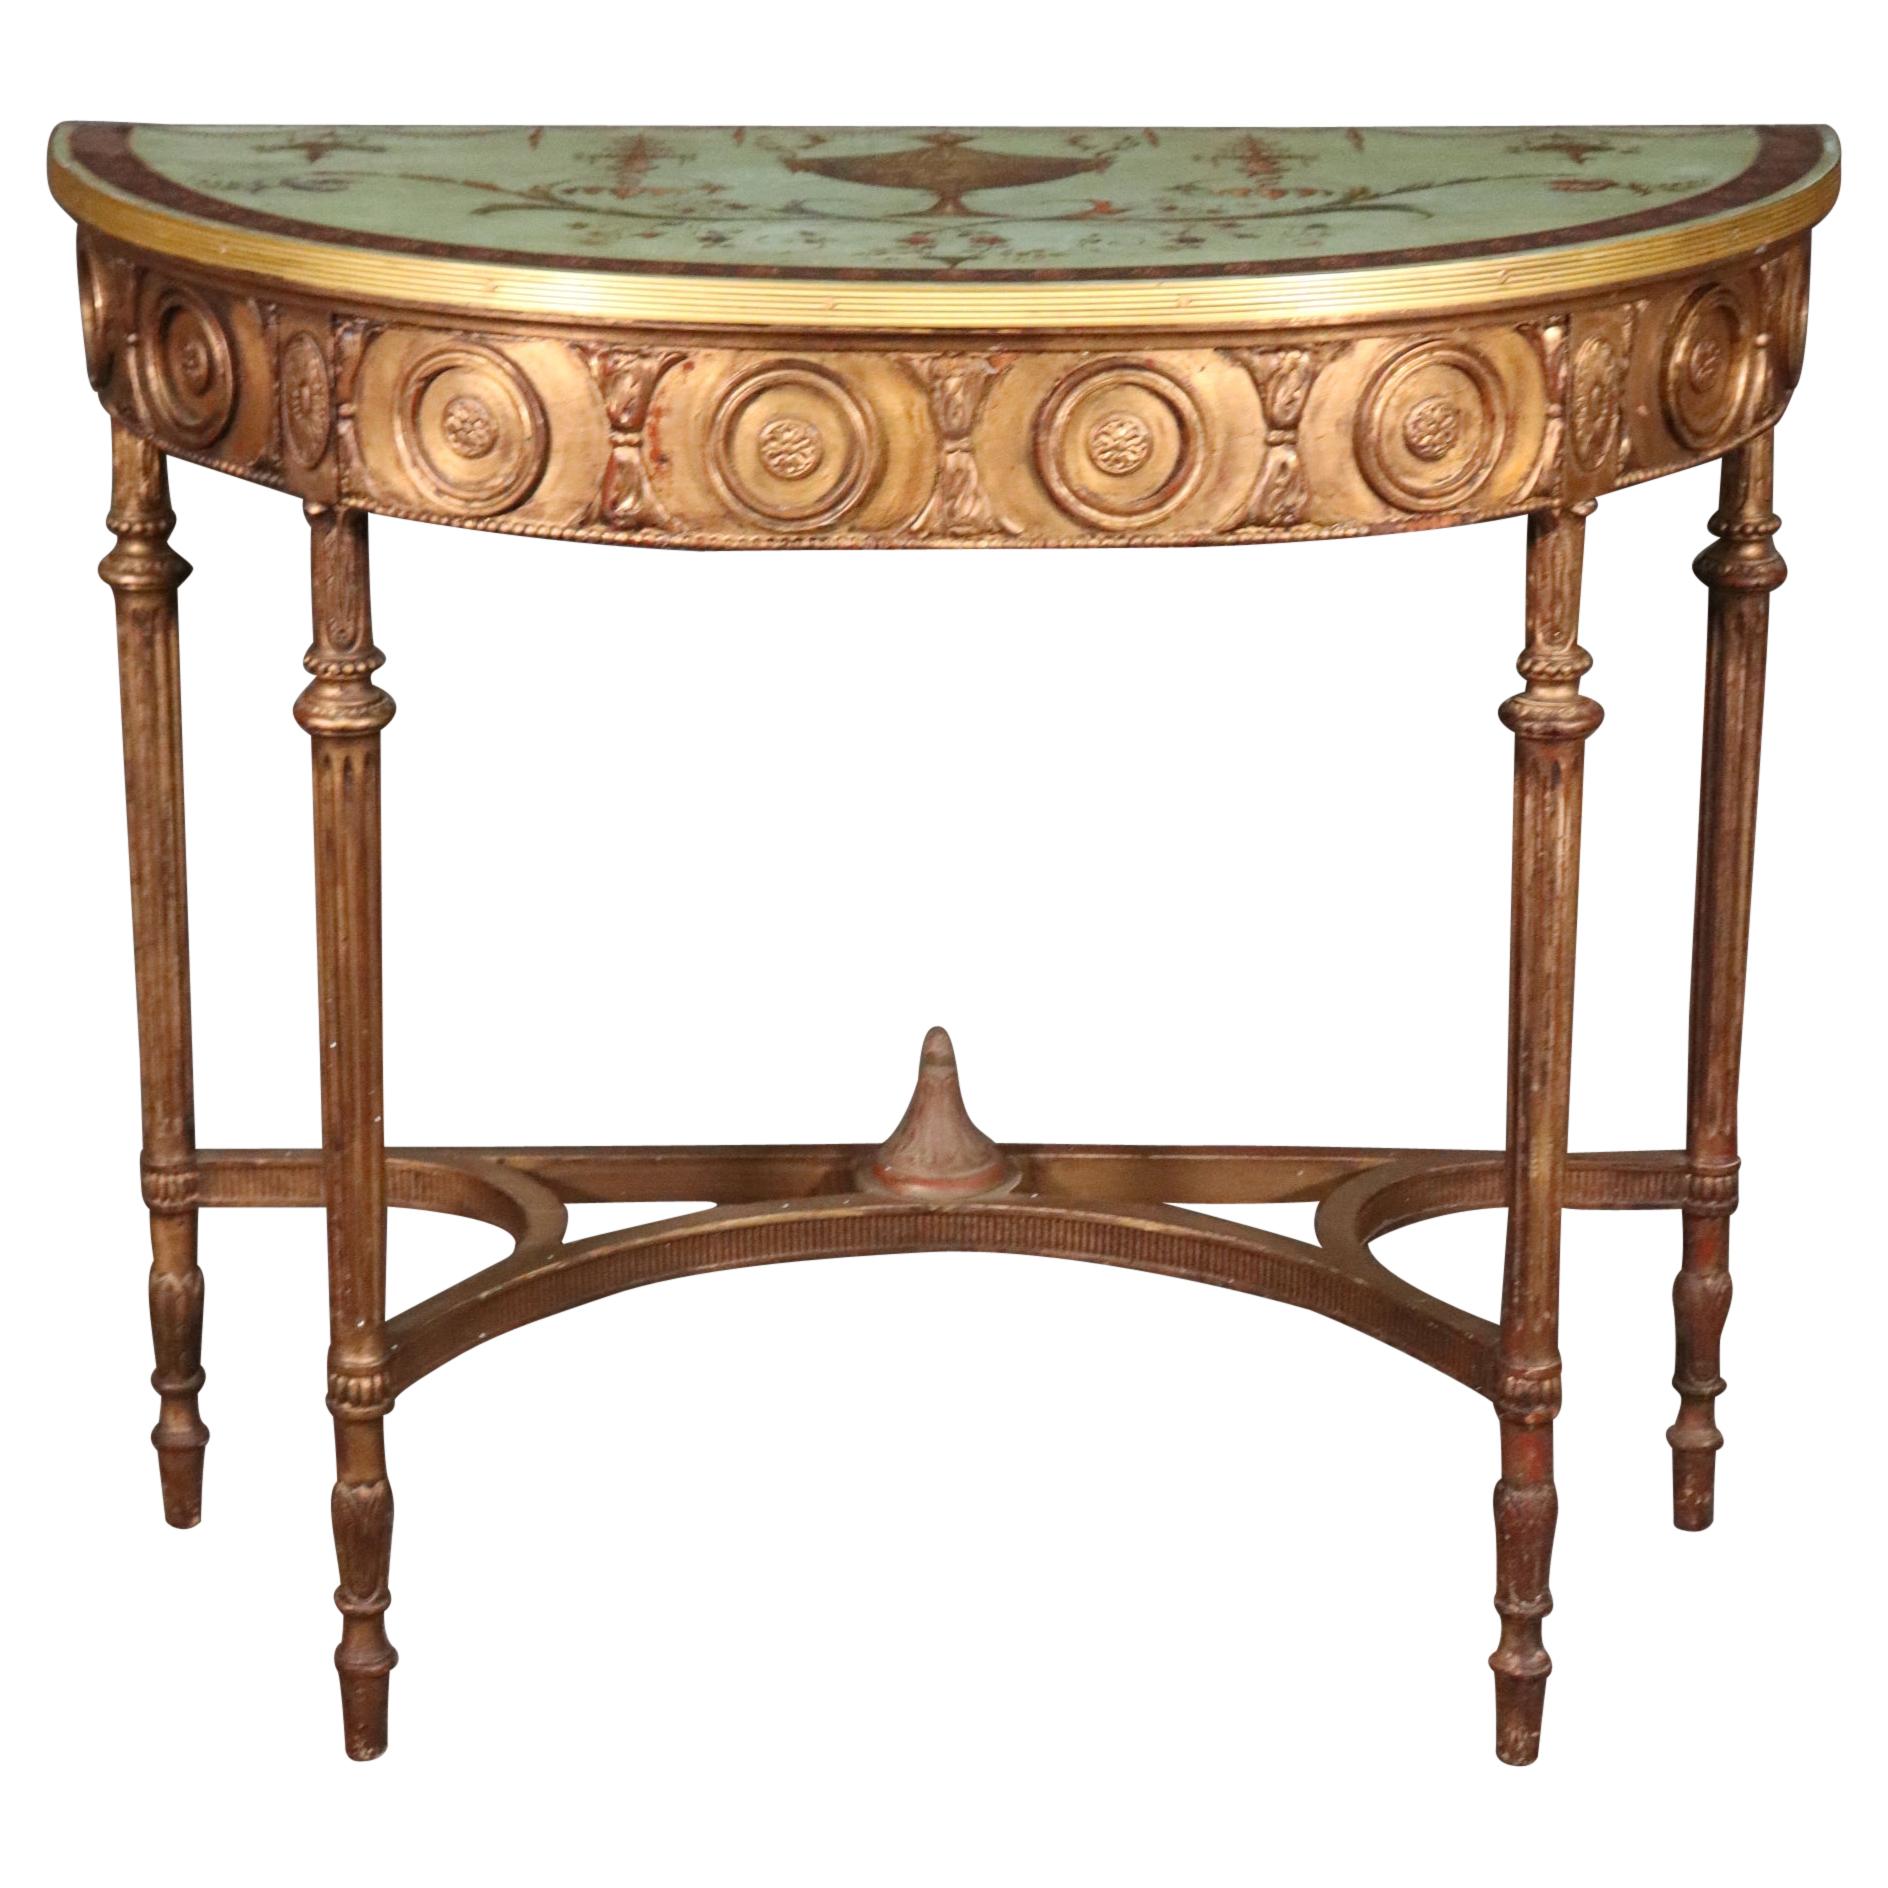 Table console demi-lune Adams de belle qualité décorée de peinture dorée, vers 1890